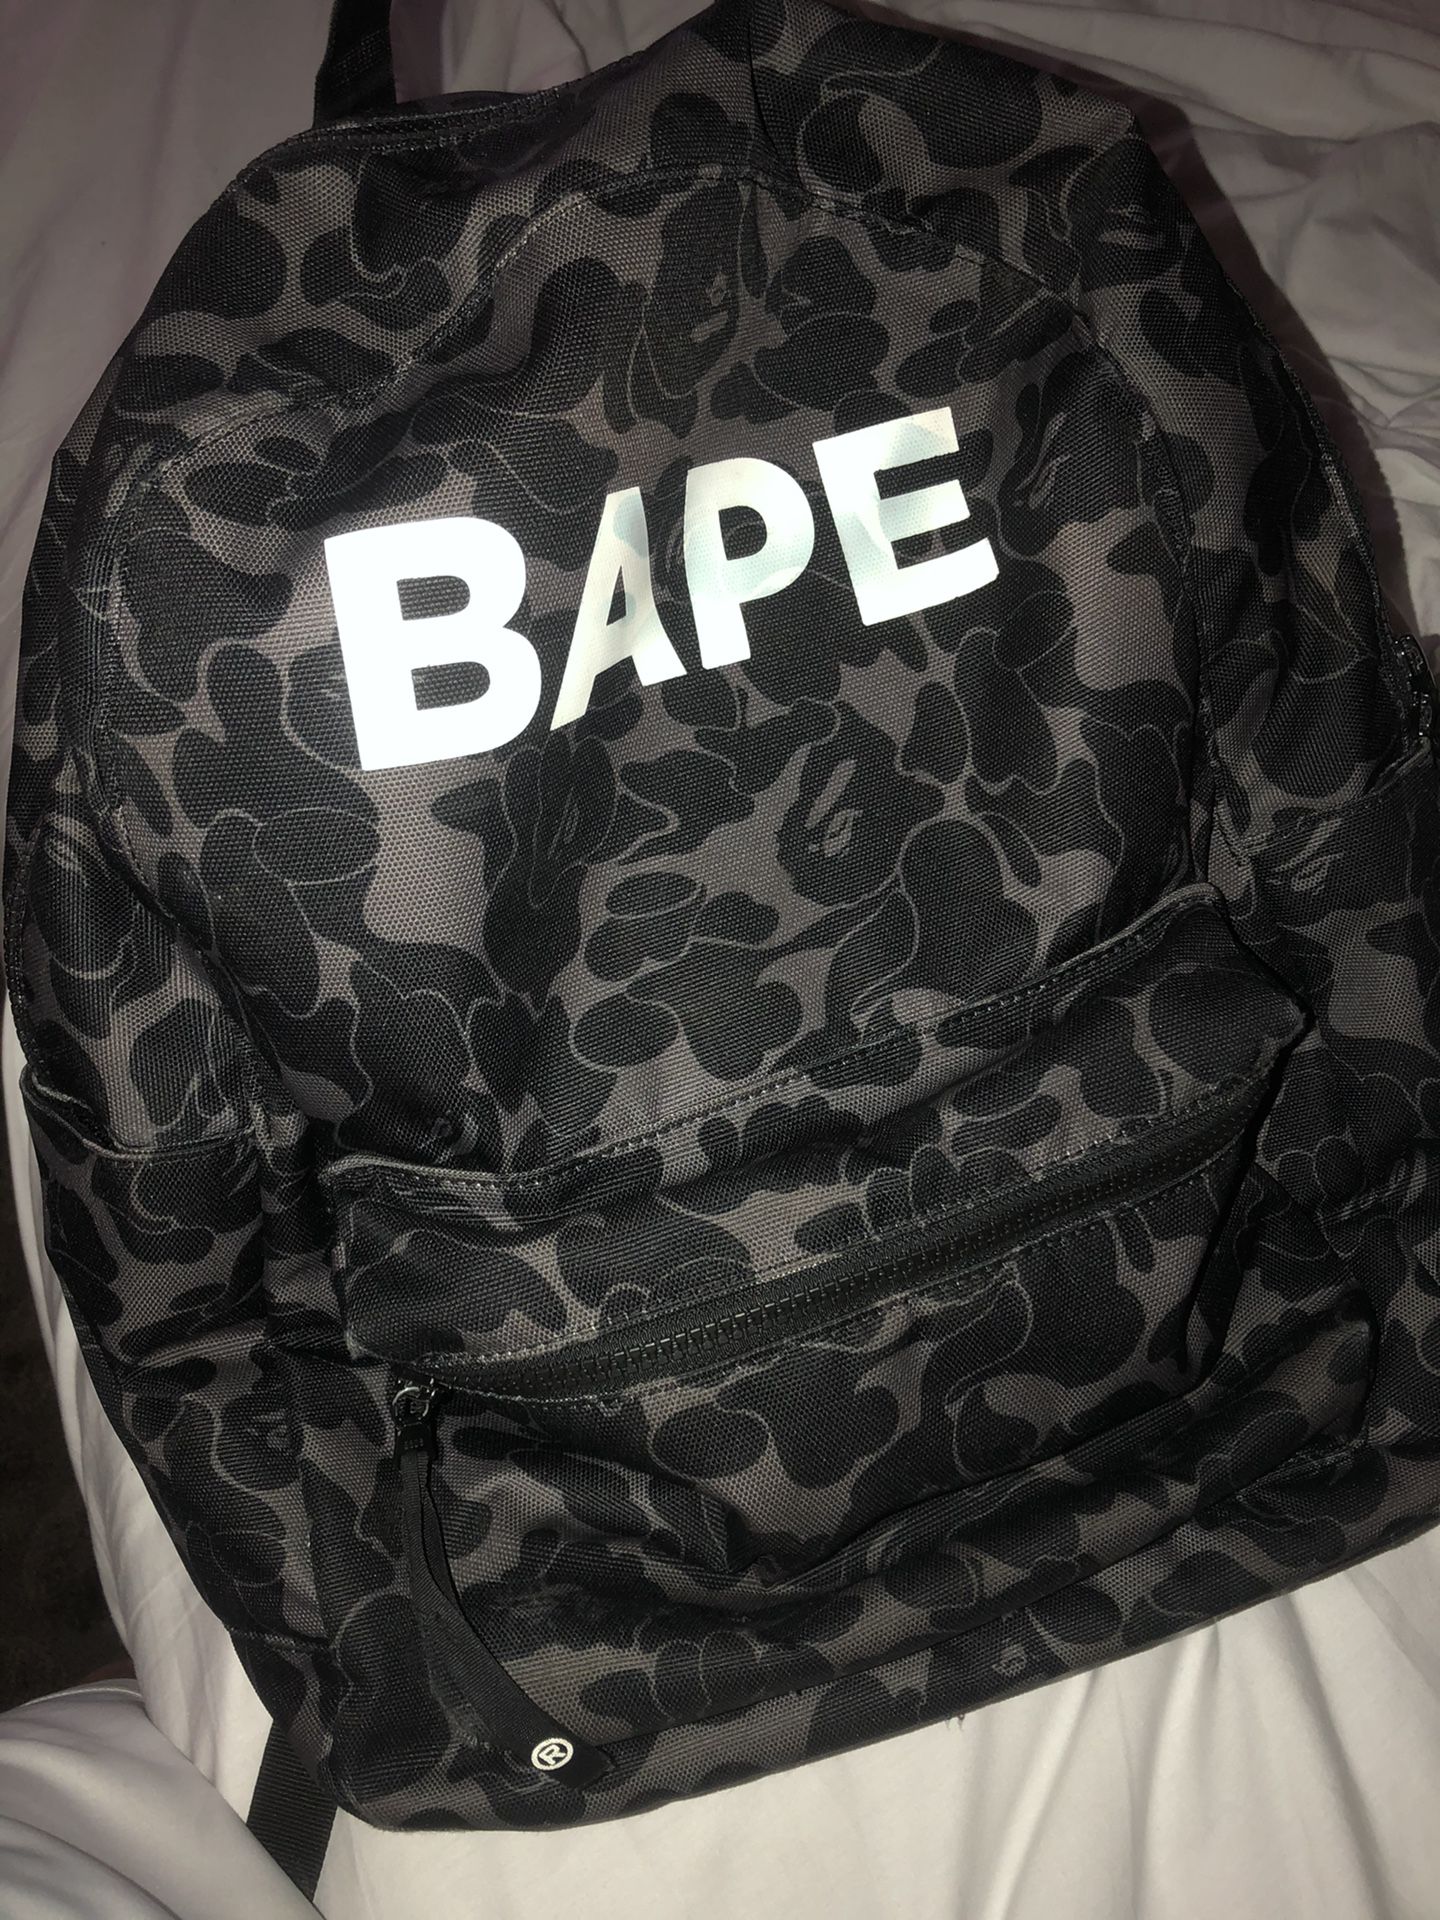 Bape back pack